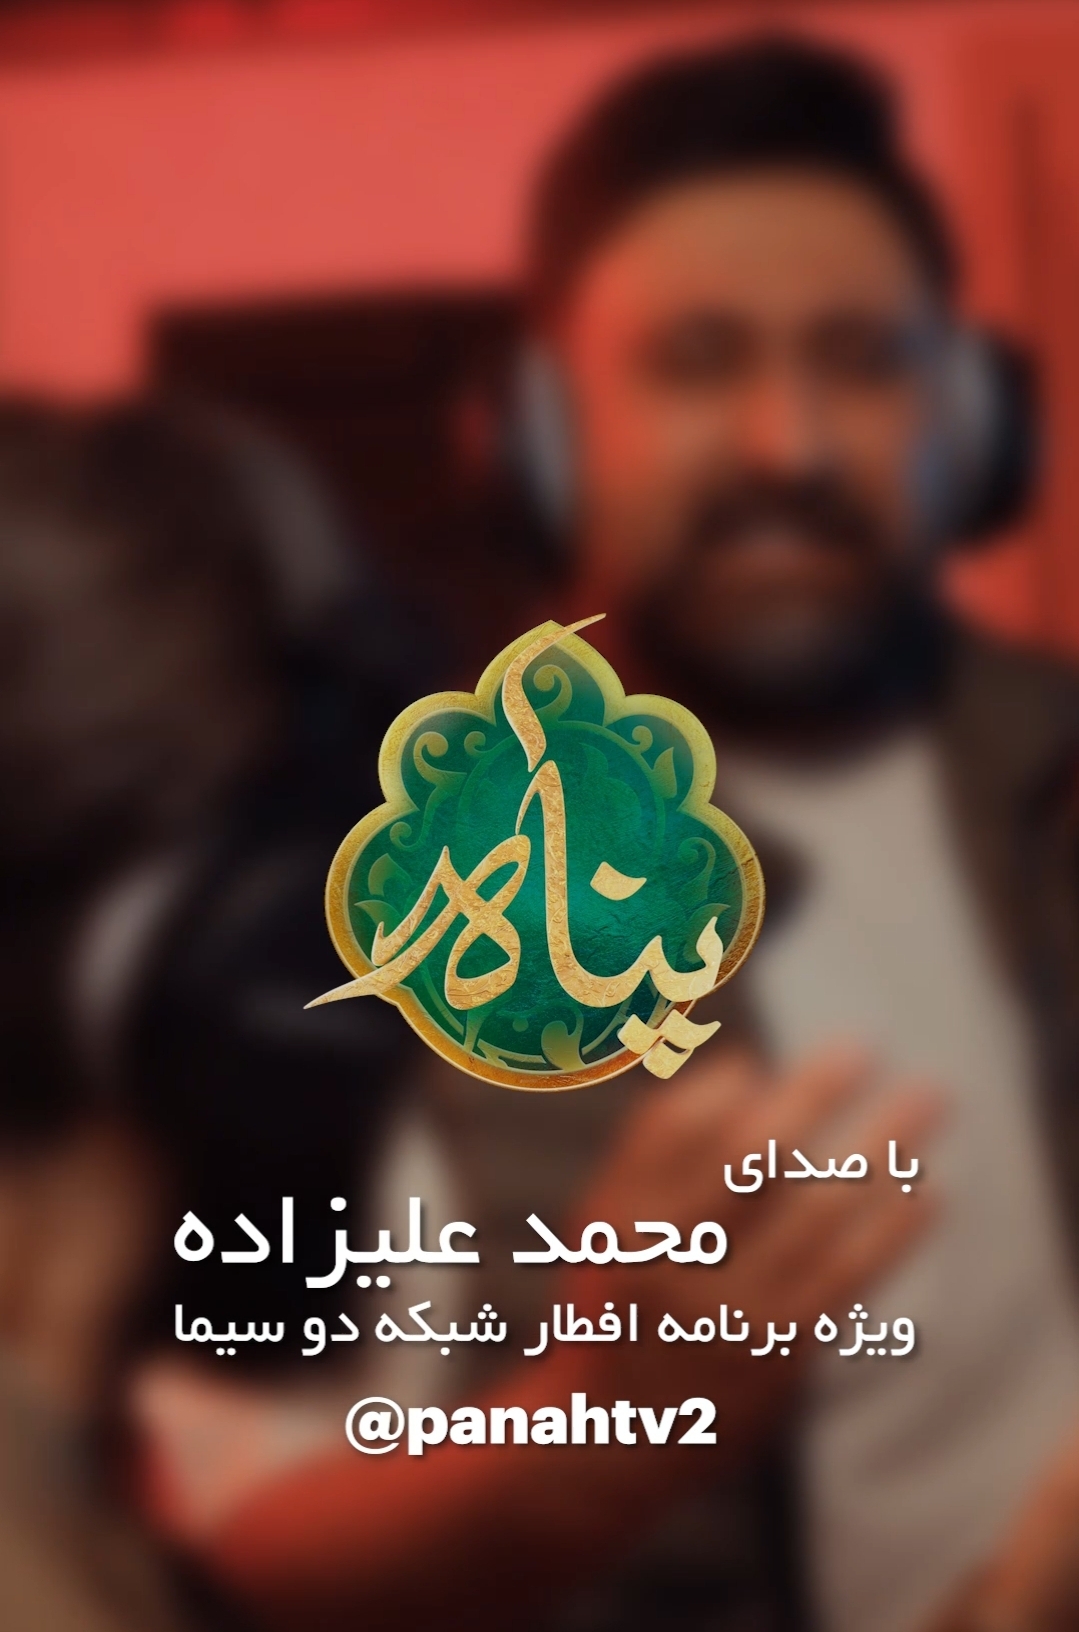 بازگشت «محمد علیزاده» به تلویزیون با تیتراژ «پناه»